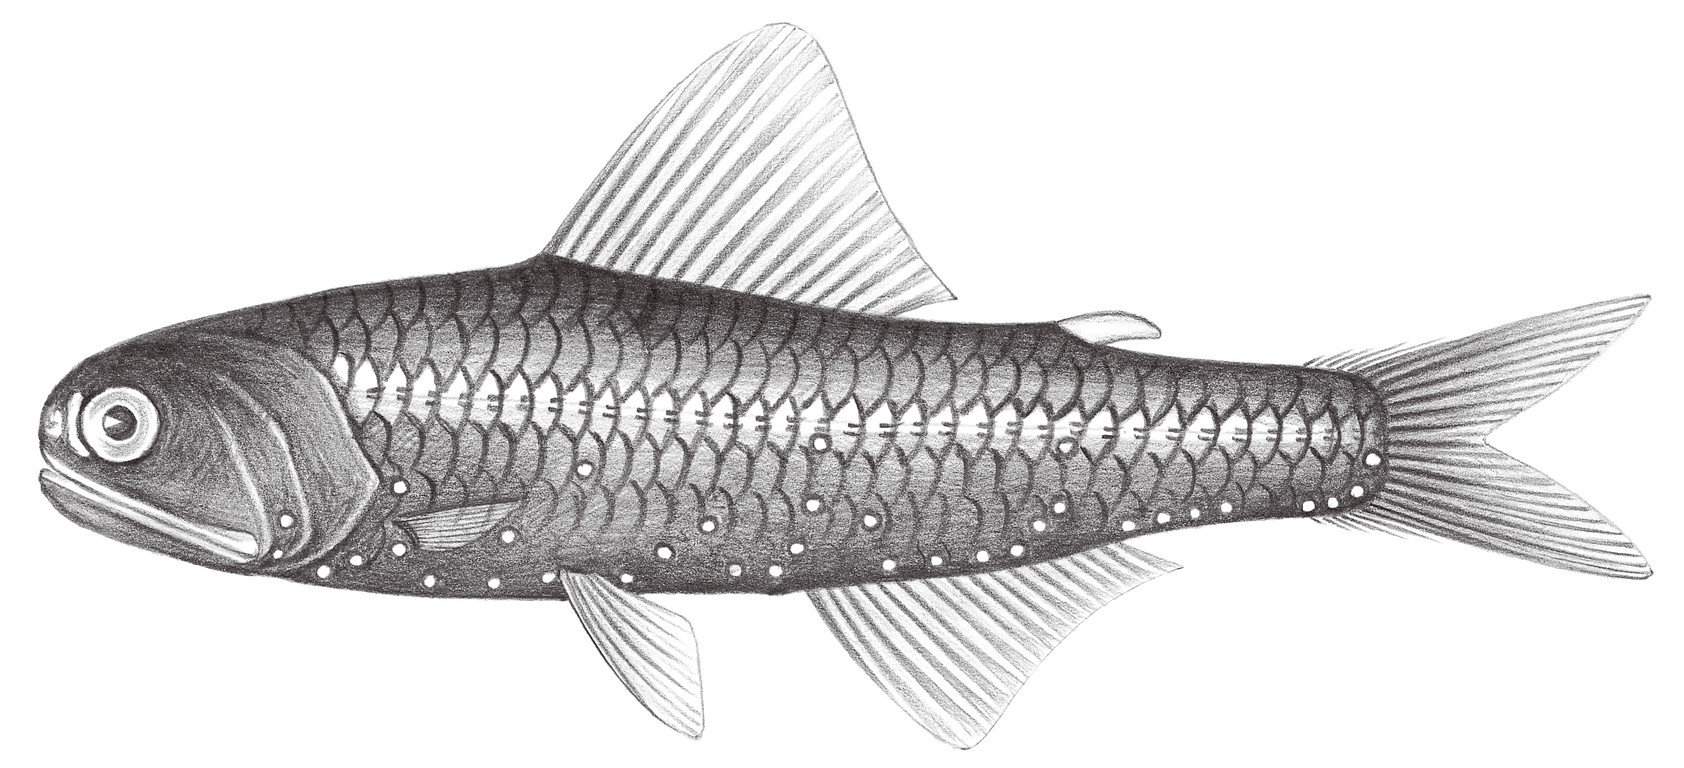 509.	疑眶燈魚 Diaphus problematicus Parr, 1928